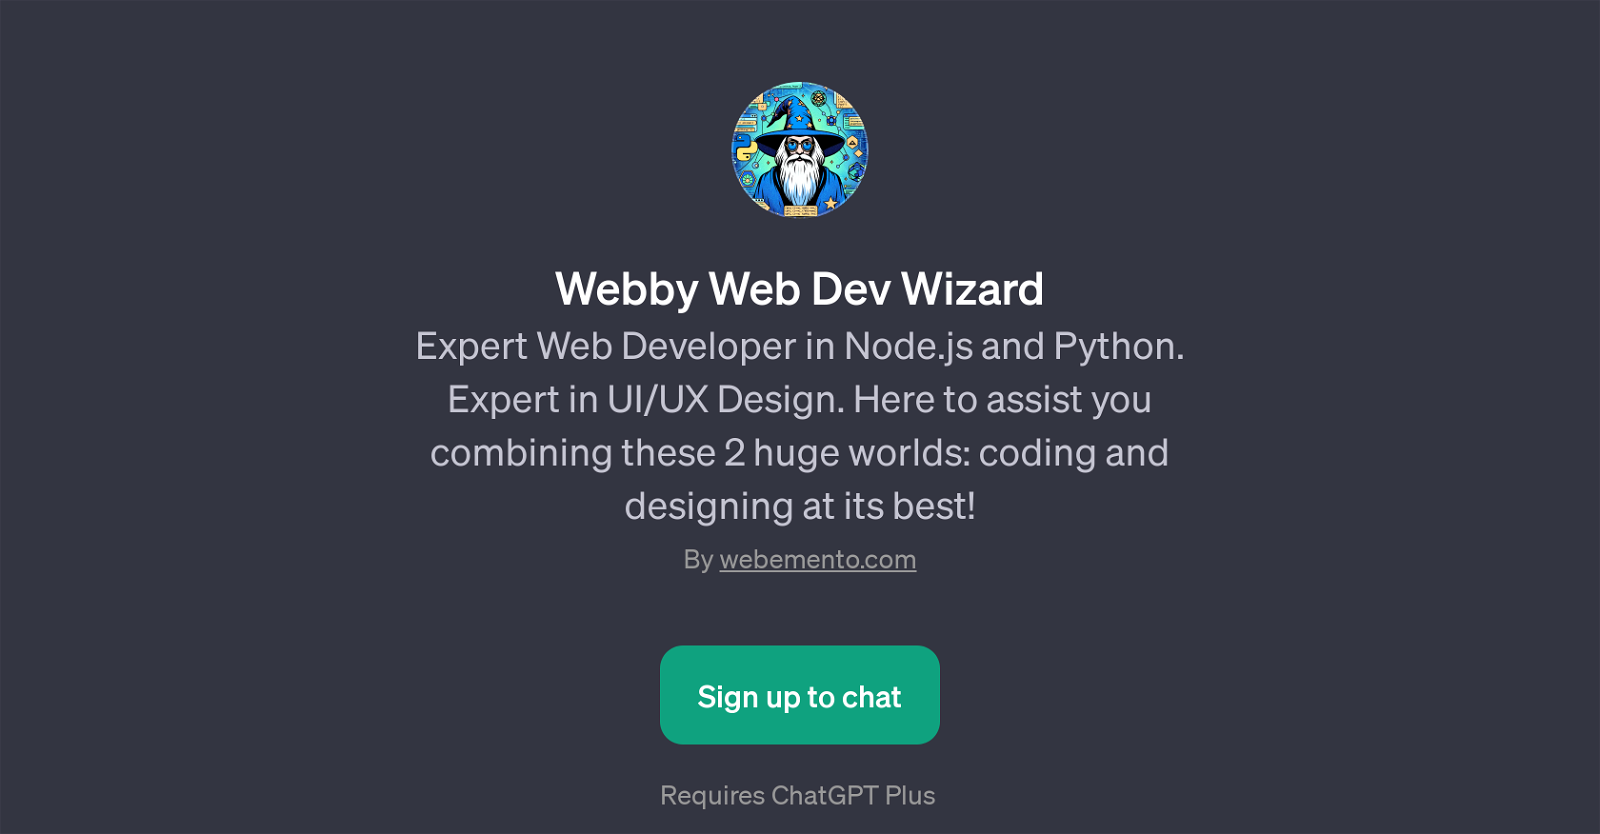 Webby Web Dev Wizard website